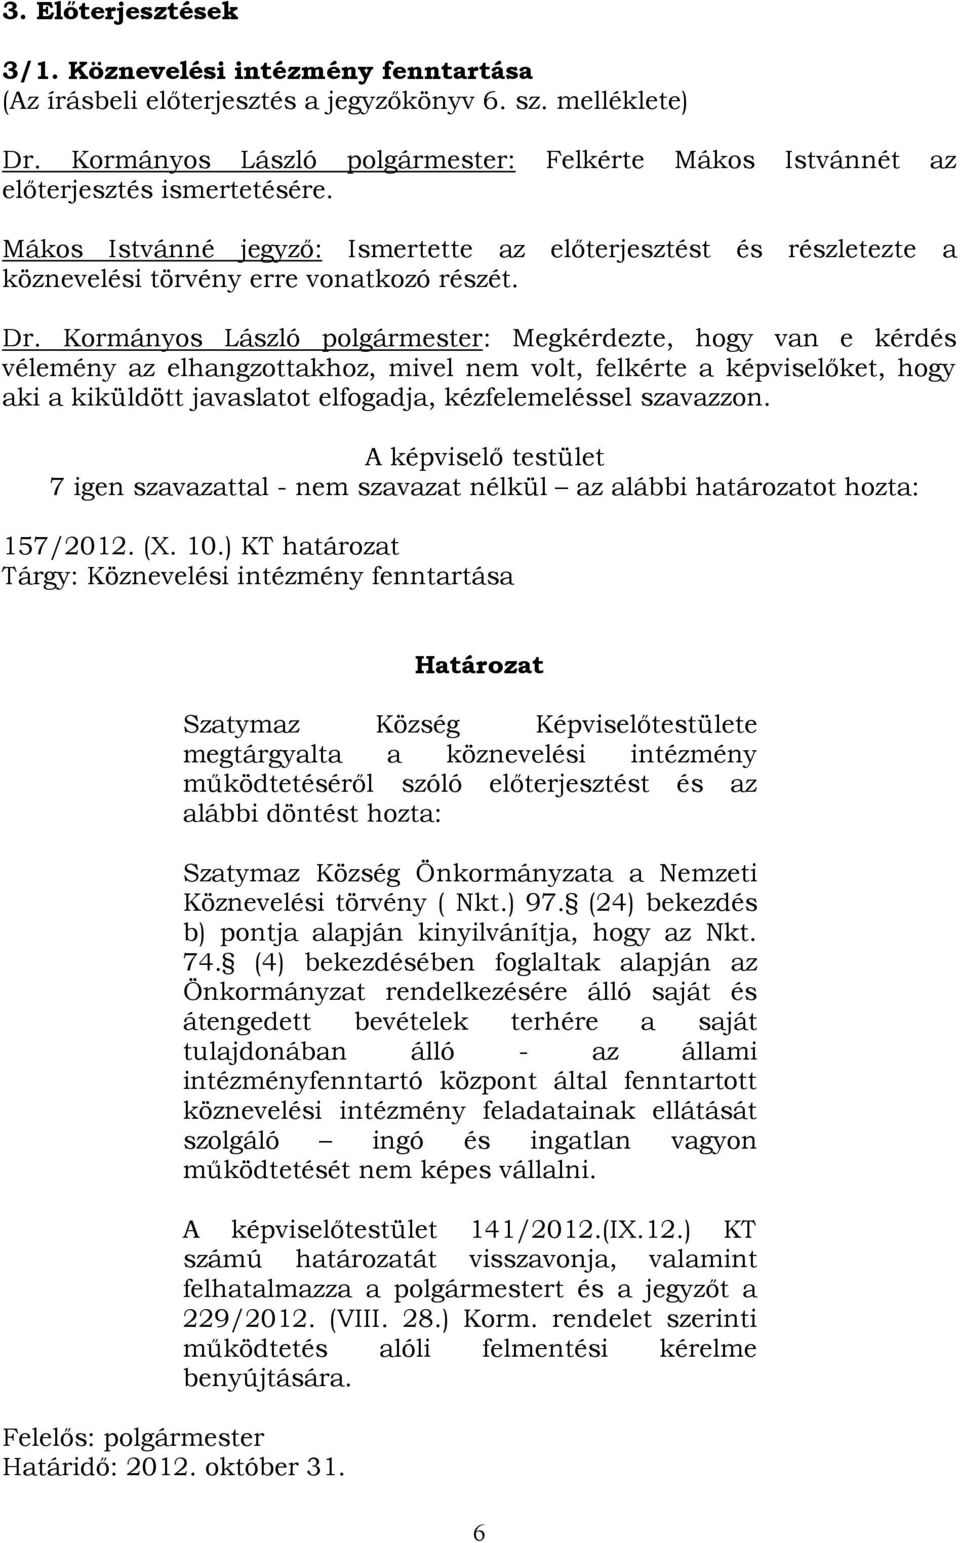 Dr. Kormányos László polgármester: Megkérdezte, hogy van e kérdés vélemény az elhangzottakhoz, mivel nem volt, felkérte a képviselőket, hogy aki a kiküldött javaslatot elfogadja, kézfelemeléssel